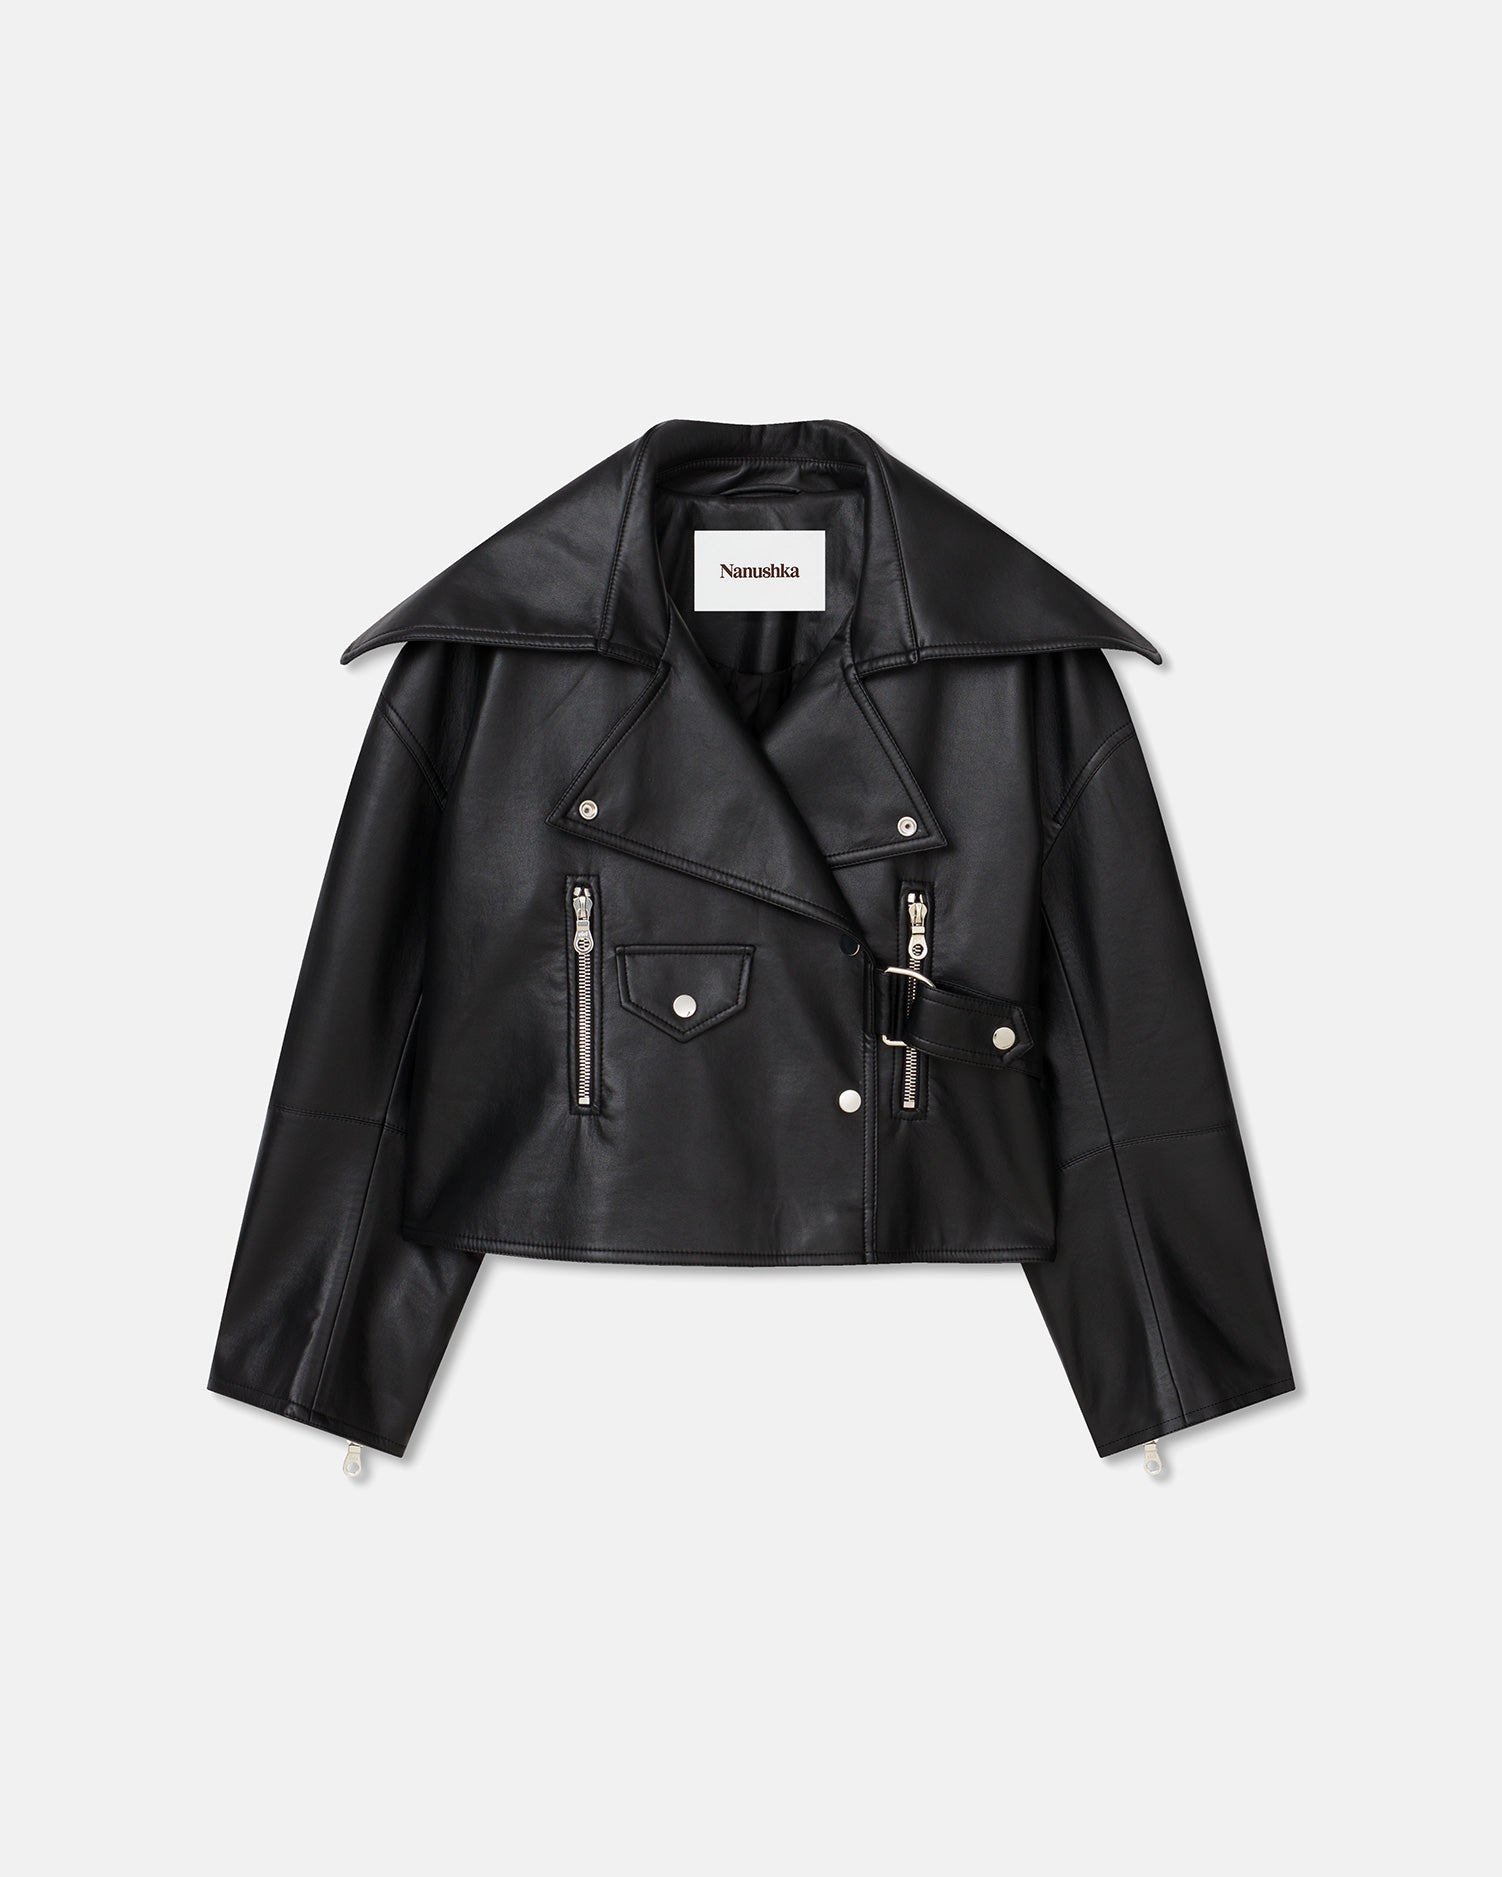 Ado - Regenerated Leather Jacket - Black – Nanushka